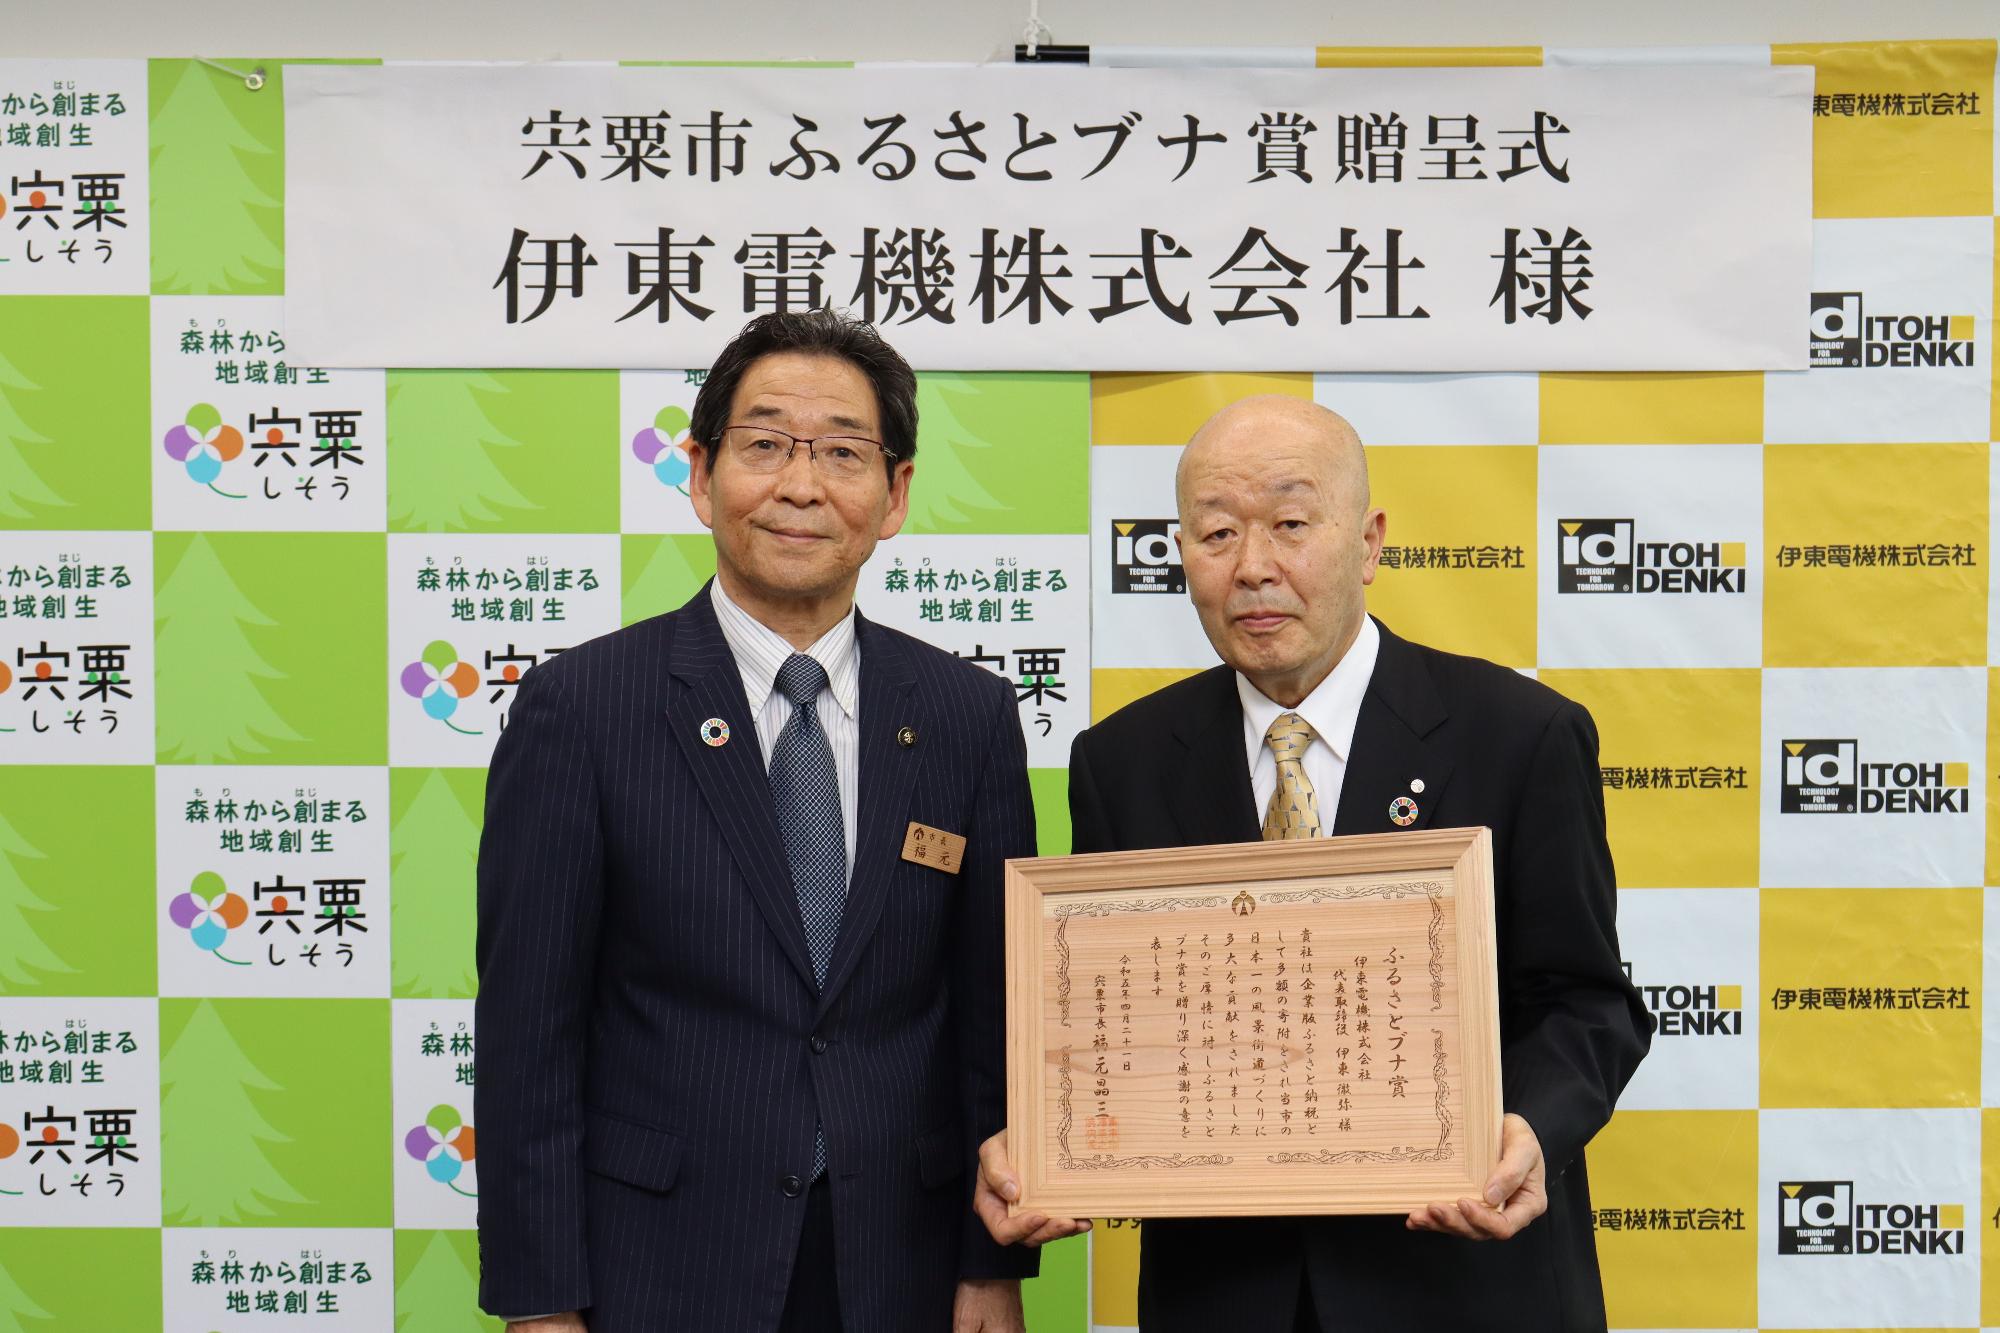 伊東電機株式会社の伊東一夫取締役会長と福元市長が二人並んでふるさとブナ賞に手を添えている写真